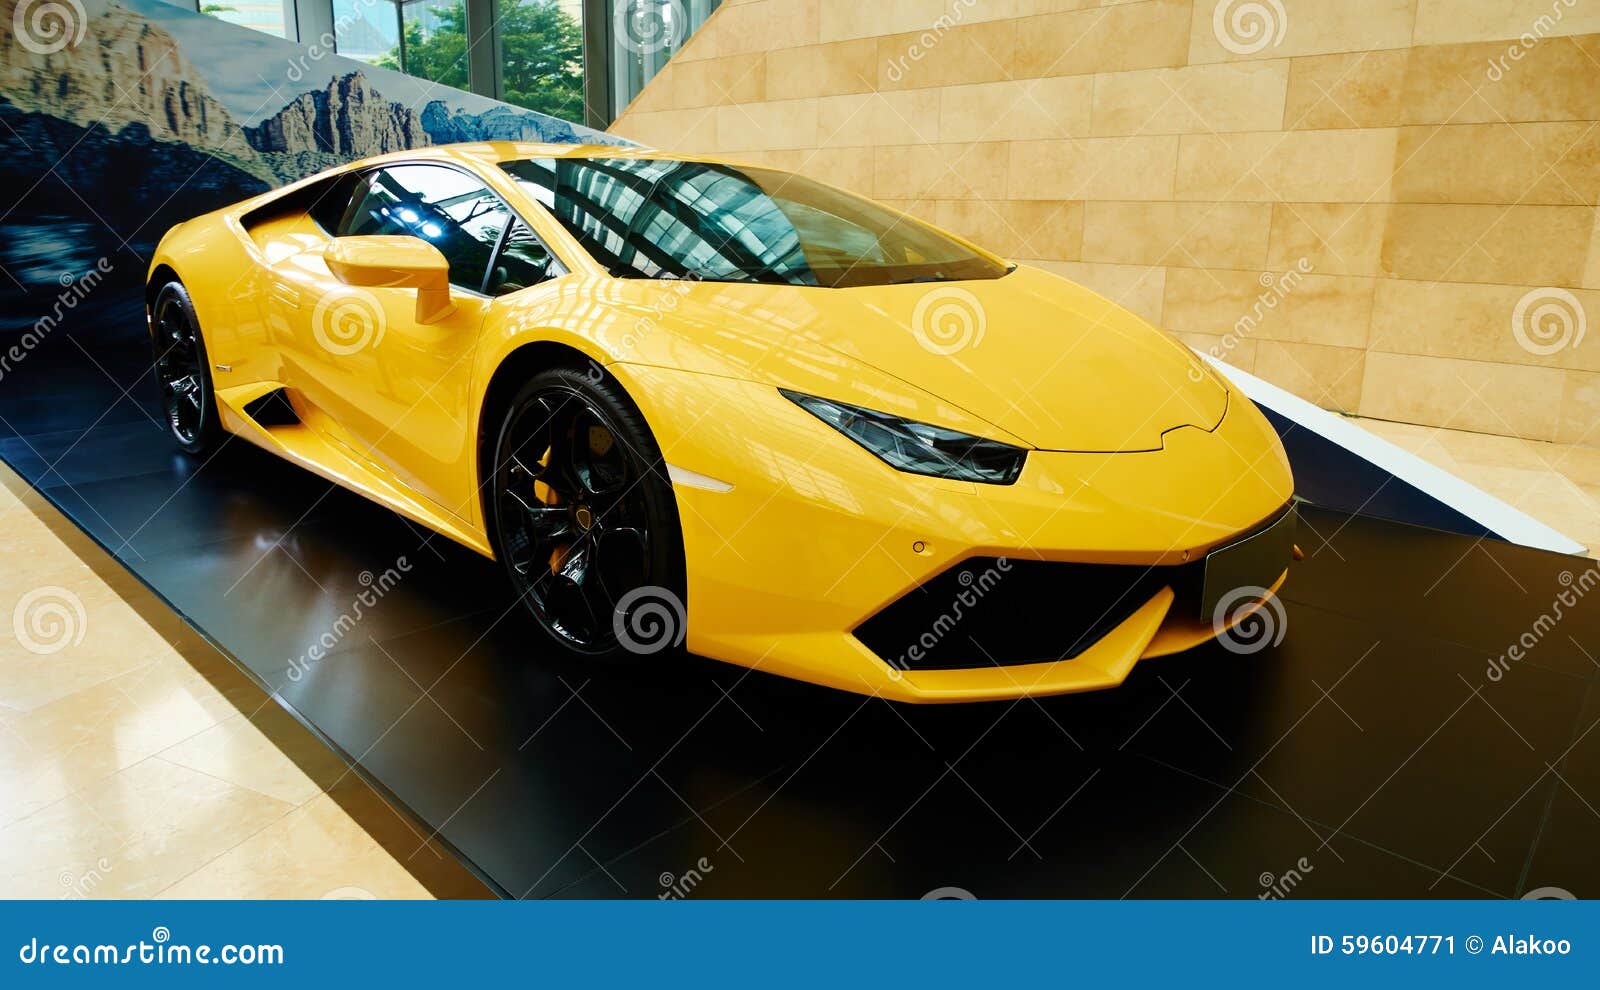 luxury sports car